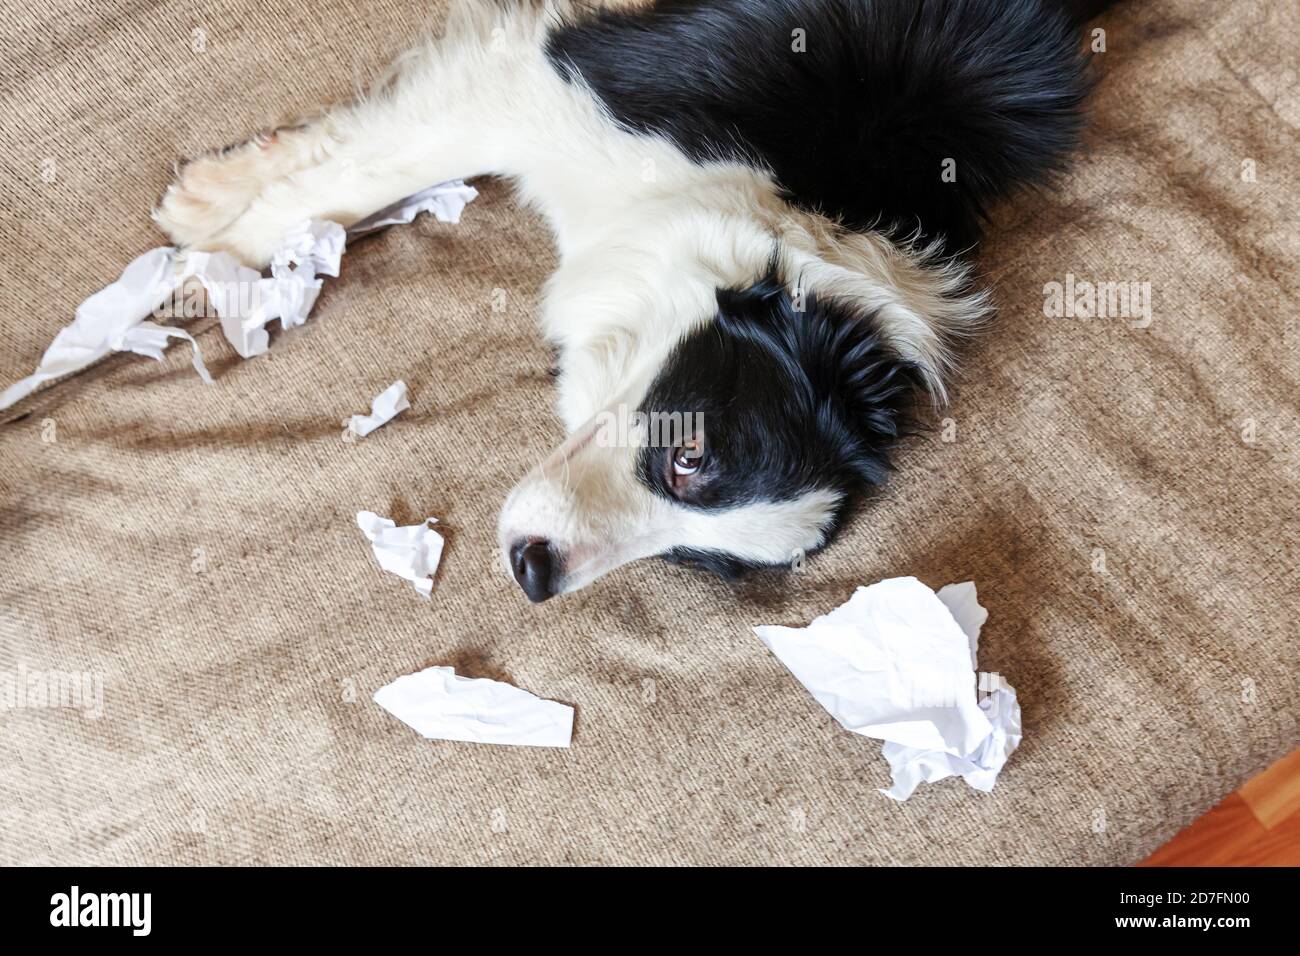 Naughty chien joueur bordure de chien de chiot collie après avoir mal piquant papier toilette couché sur le canapé à la maison. Coupable et détruit la salle de séjour. Abîissez votre chiot et votre maison avec un regard amusant Banque D'Images